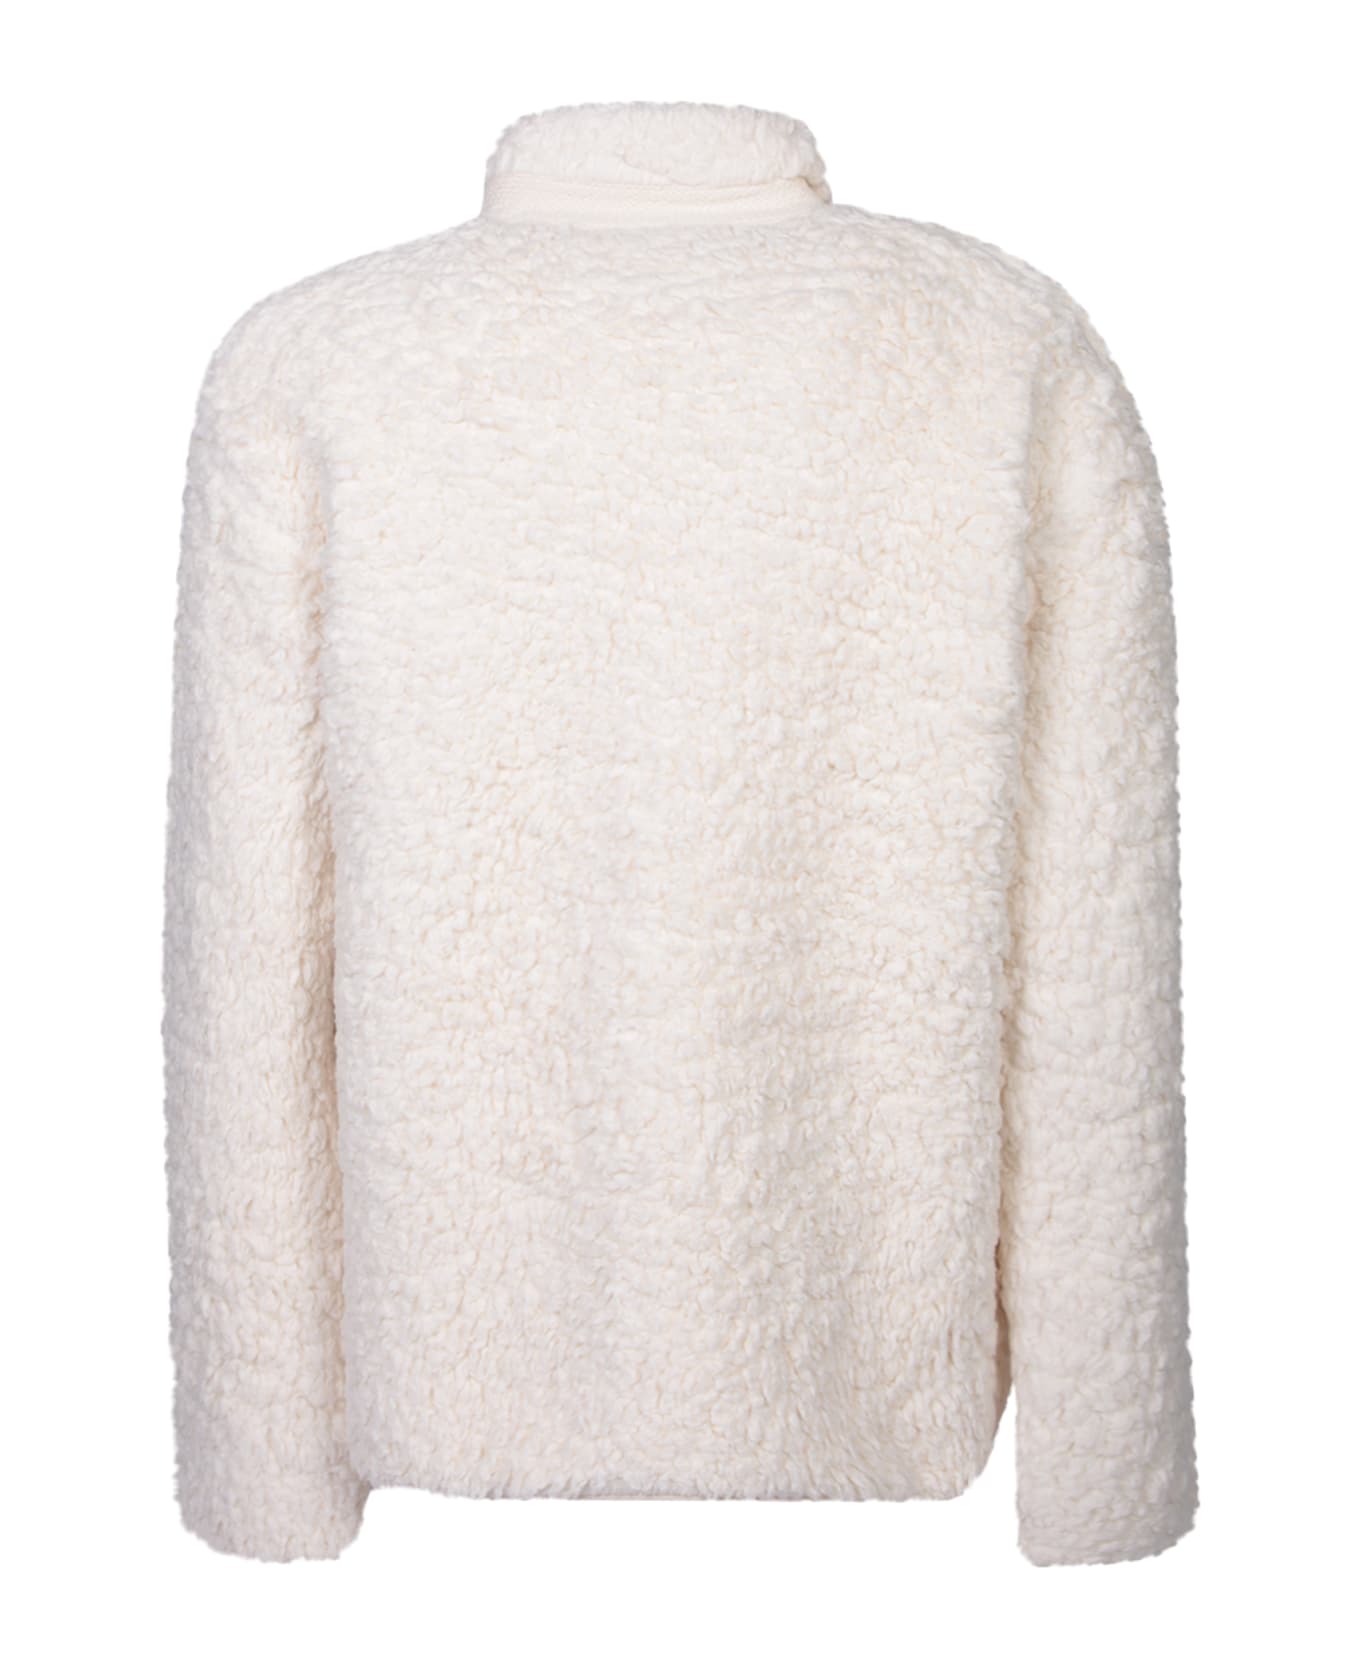 Jil Sander Fleece Ivory Sweatshirt - White